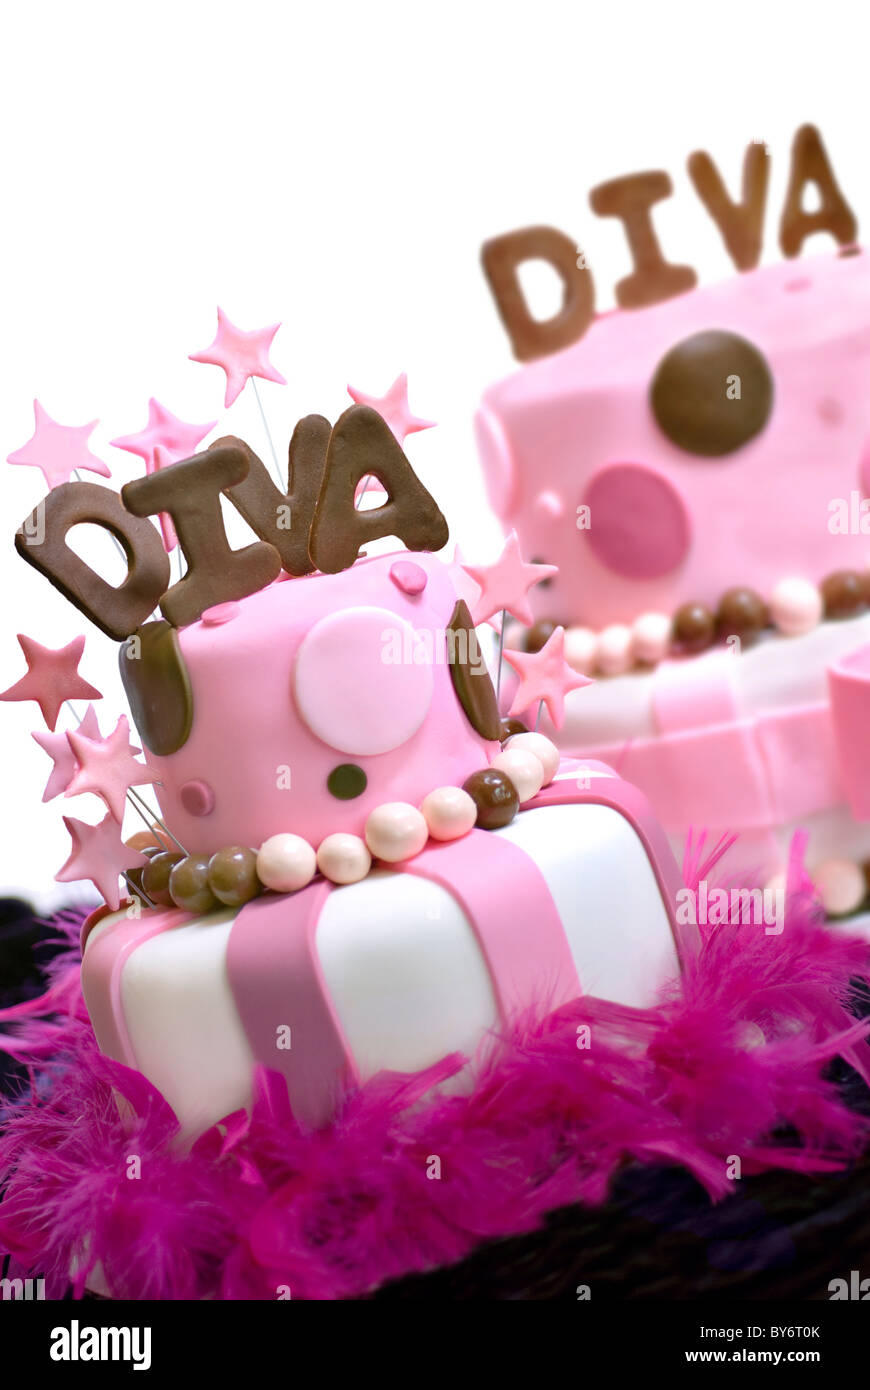 Zwei rosa Fondant Kuchen mit Diva auf Ober- und Garnierung des vorderen Kuchens Sterne geschrieben. Vordere Kuchen steht im Mittelpunkt, hintere Kuchen aus o Stockfoto